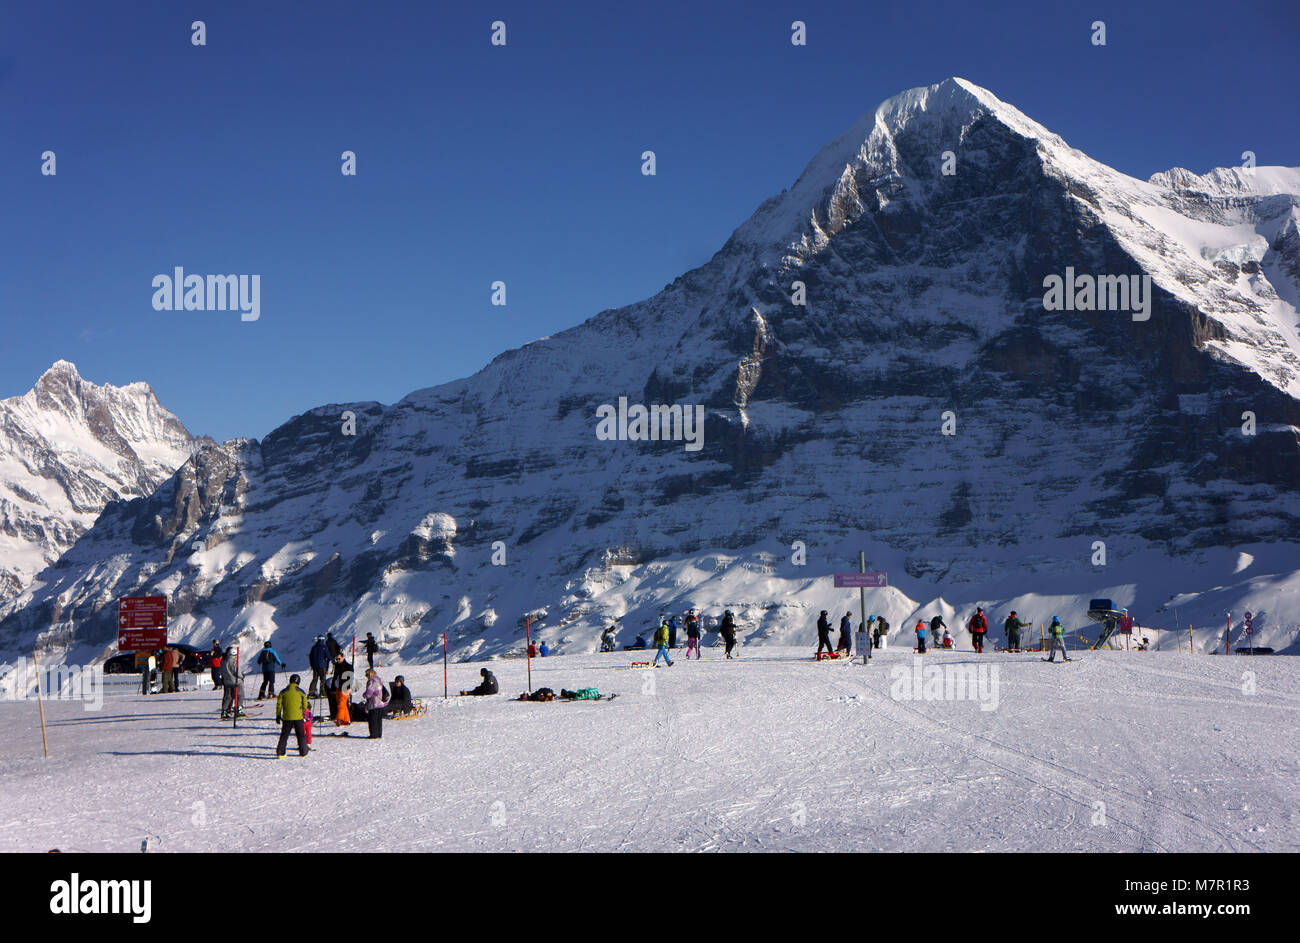 Skiresort Männlichen, Grindelwald, with Mtns Schreckhorn (l) and Eiger, Bernese alps, Jungfrau destination, Switzerland Stock Photo